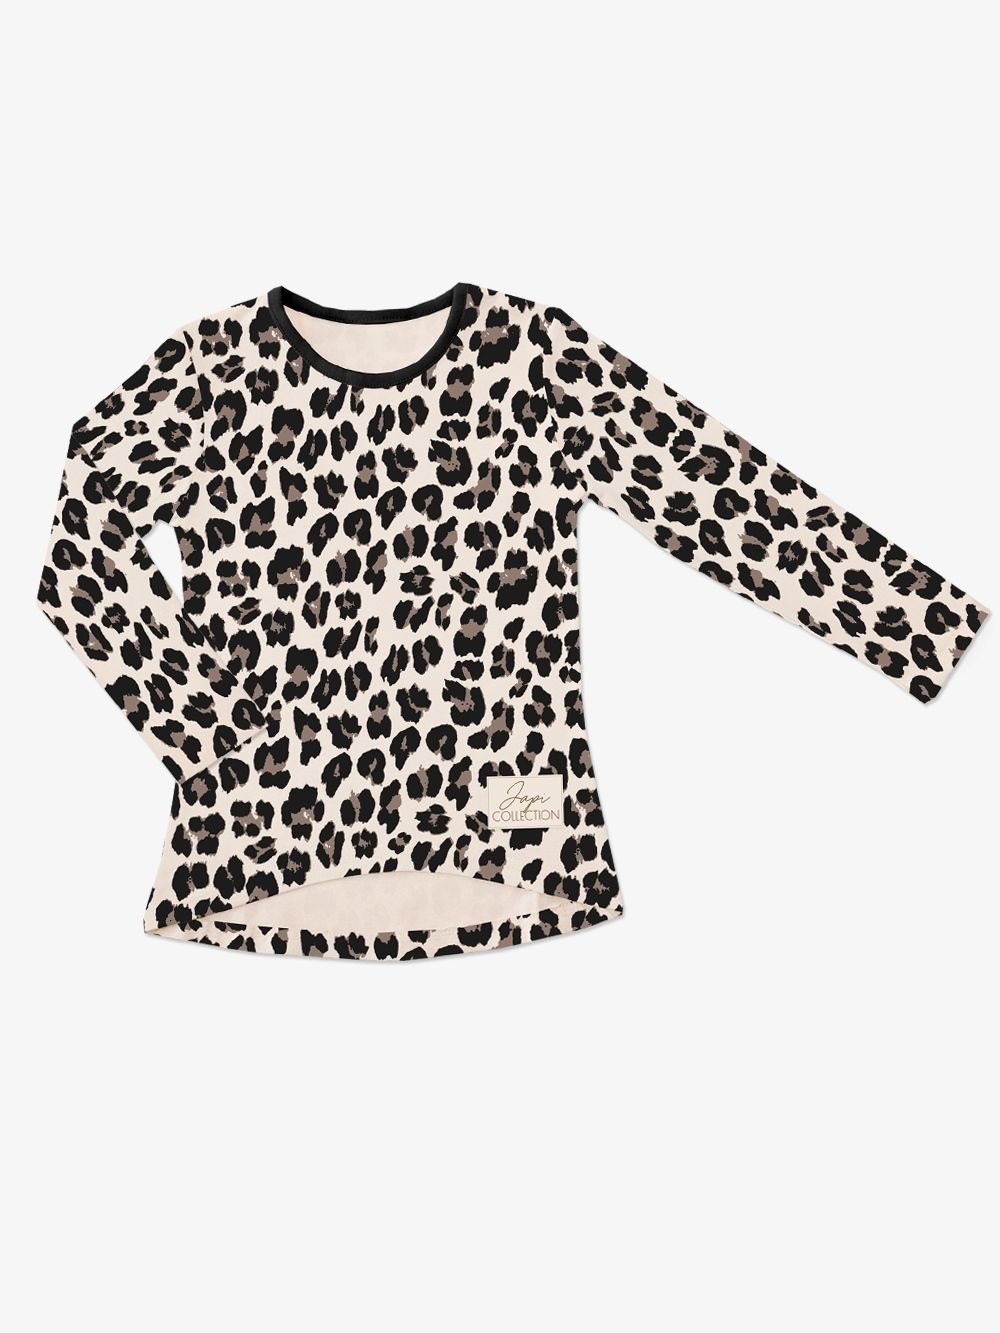 tričko dívčí Leopard DR